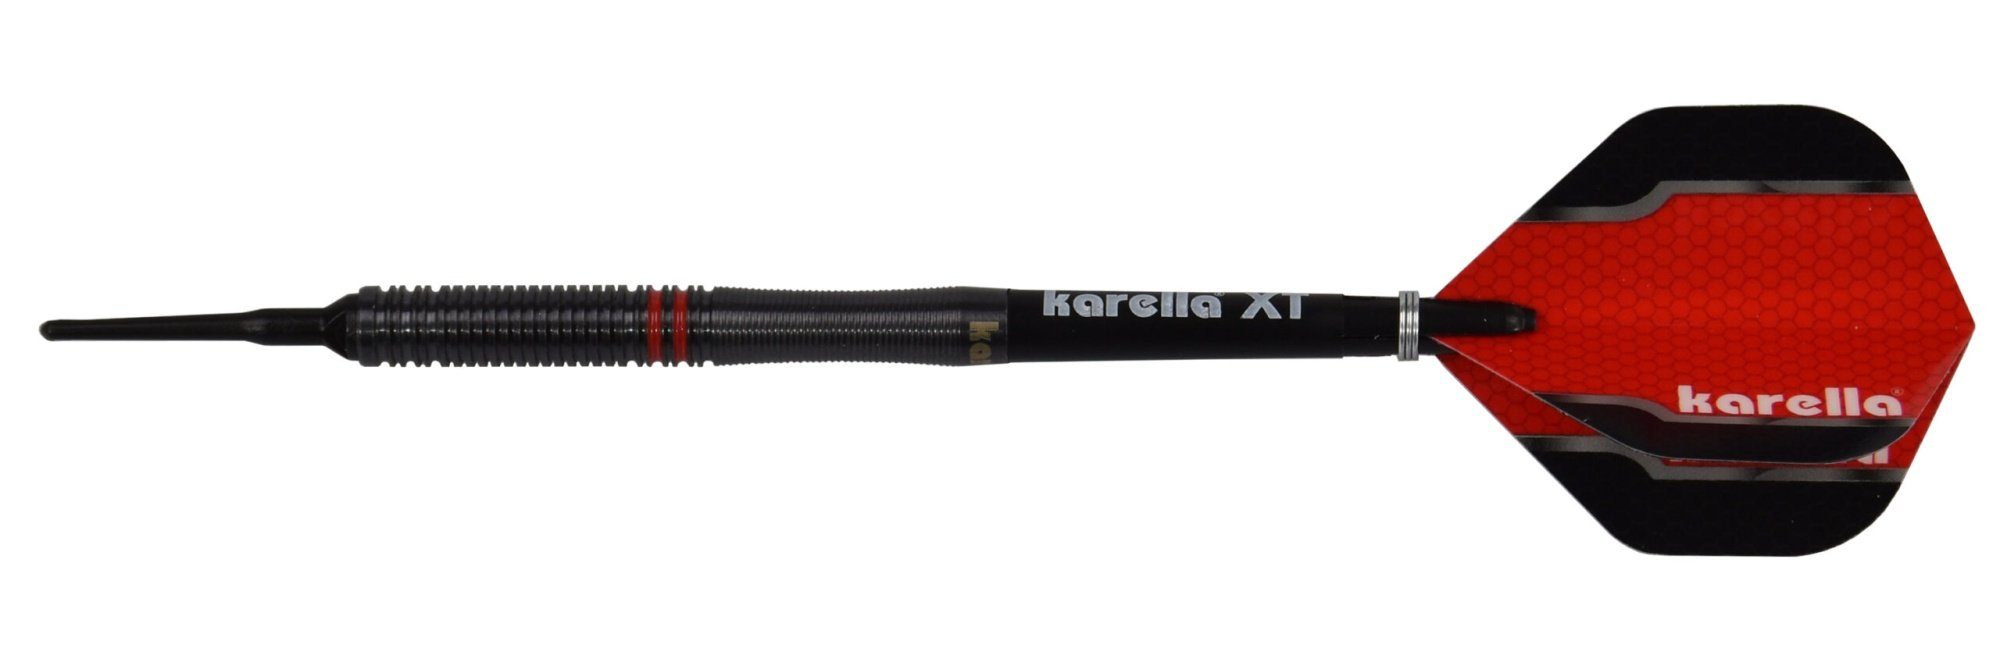 Karella Karella Softdart 90% schwarz, 20g oder Dartpfeil 22g Tungsten, Fighter,